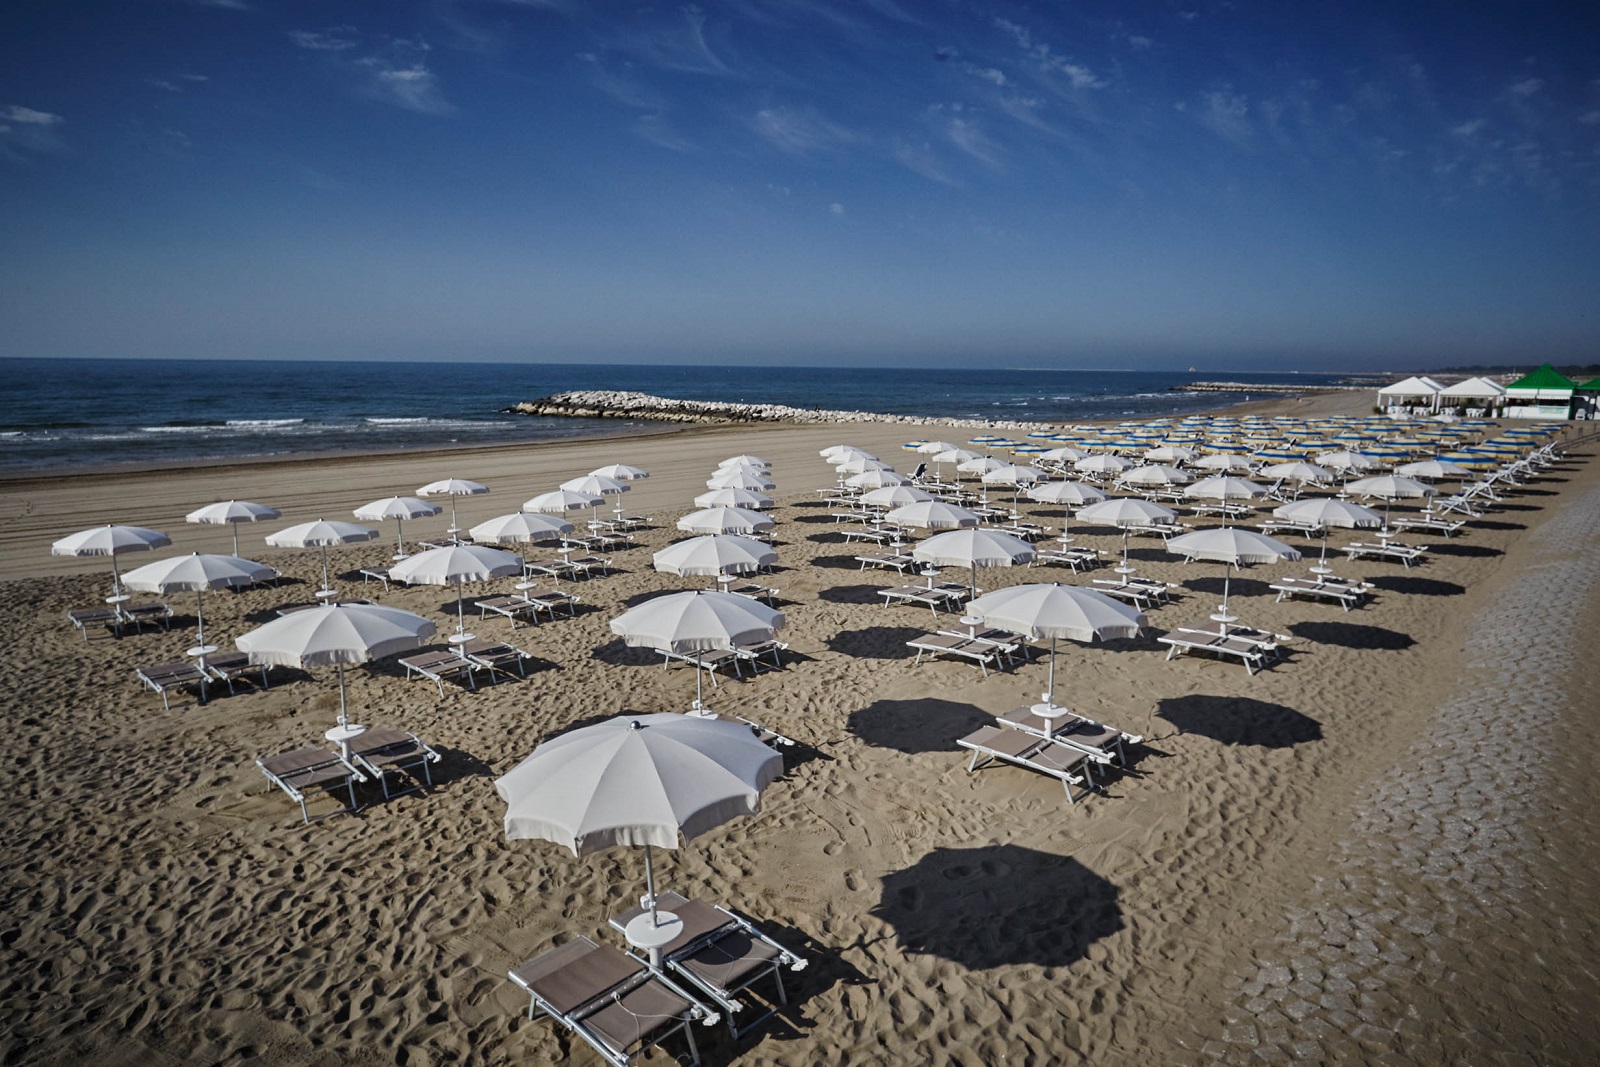 Zdjęcie Spiaggia di Cavallino Treporti z poziomem czystości wysoki